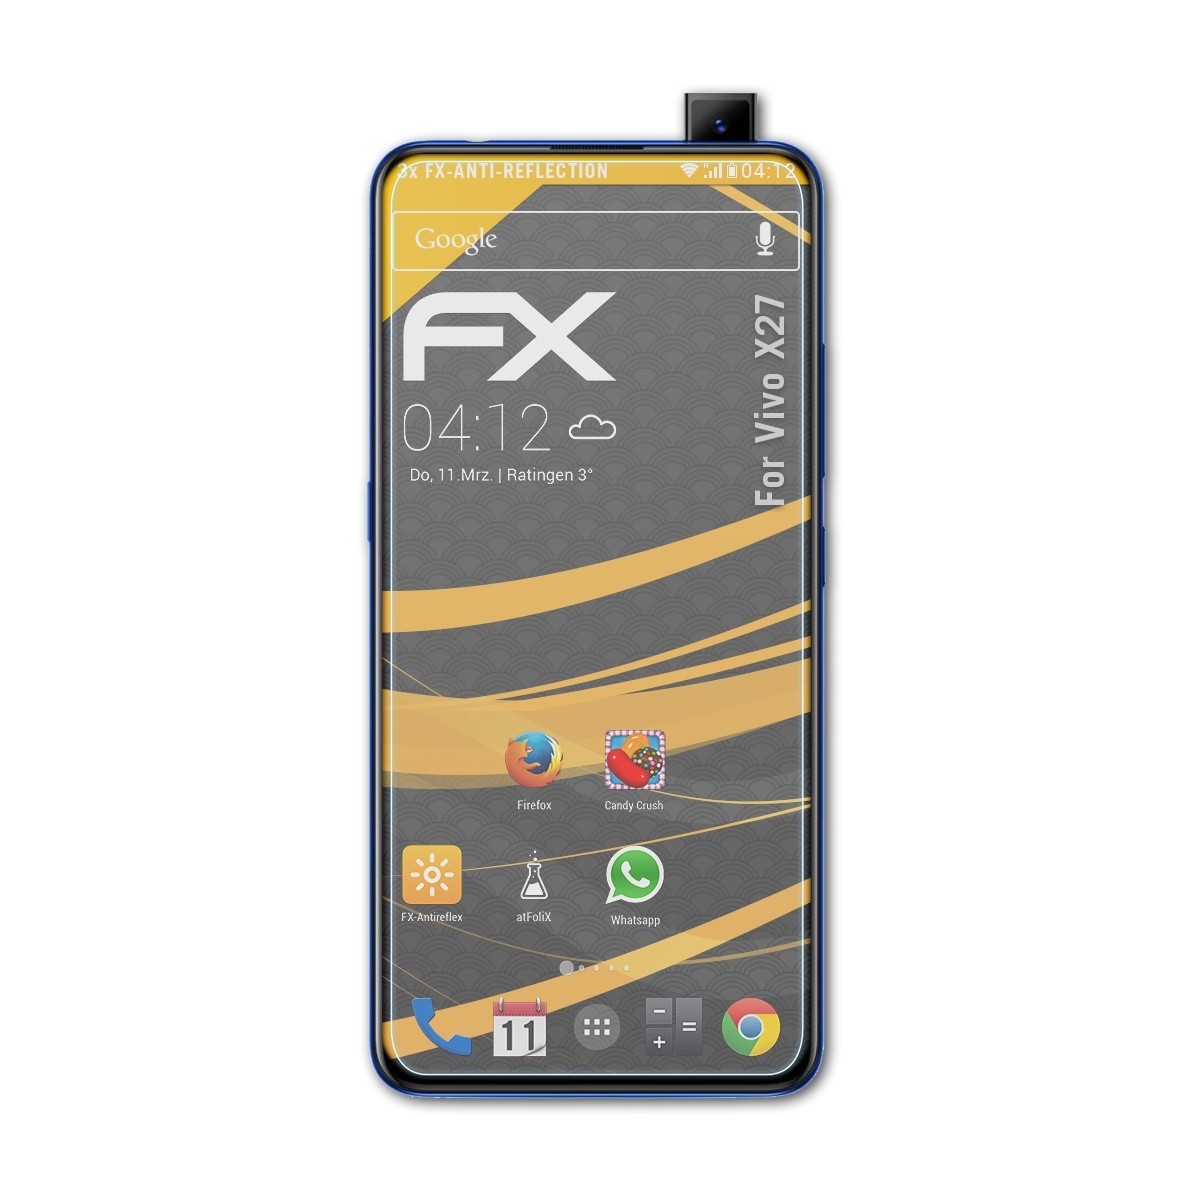 Vivo ATFOLIX Displayschutz(für FX-Antireflex 3x X27)